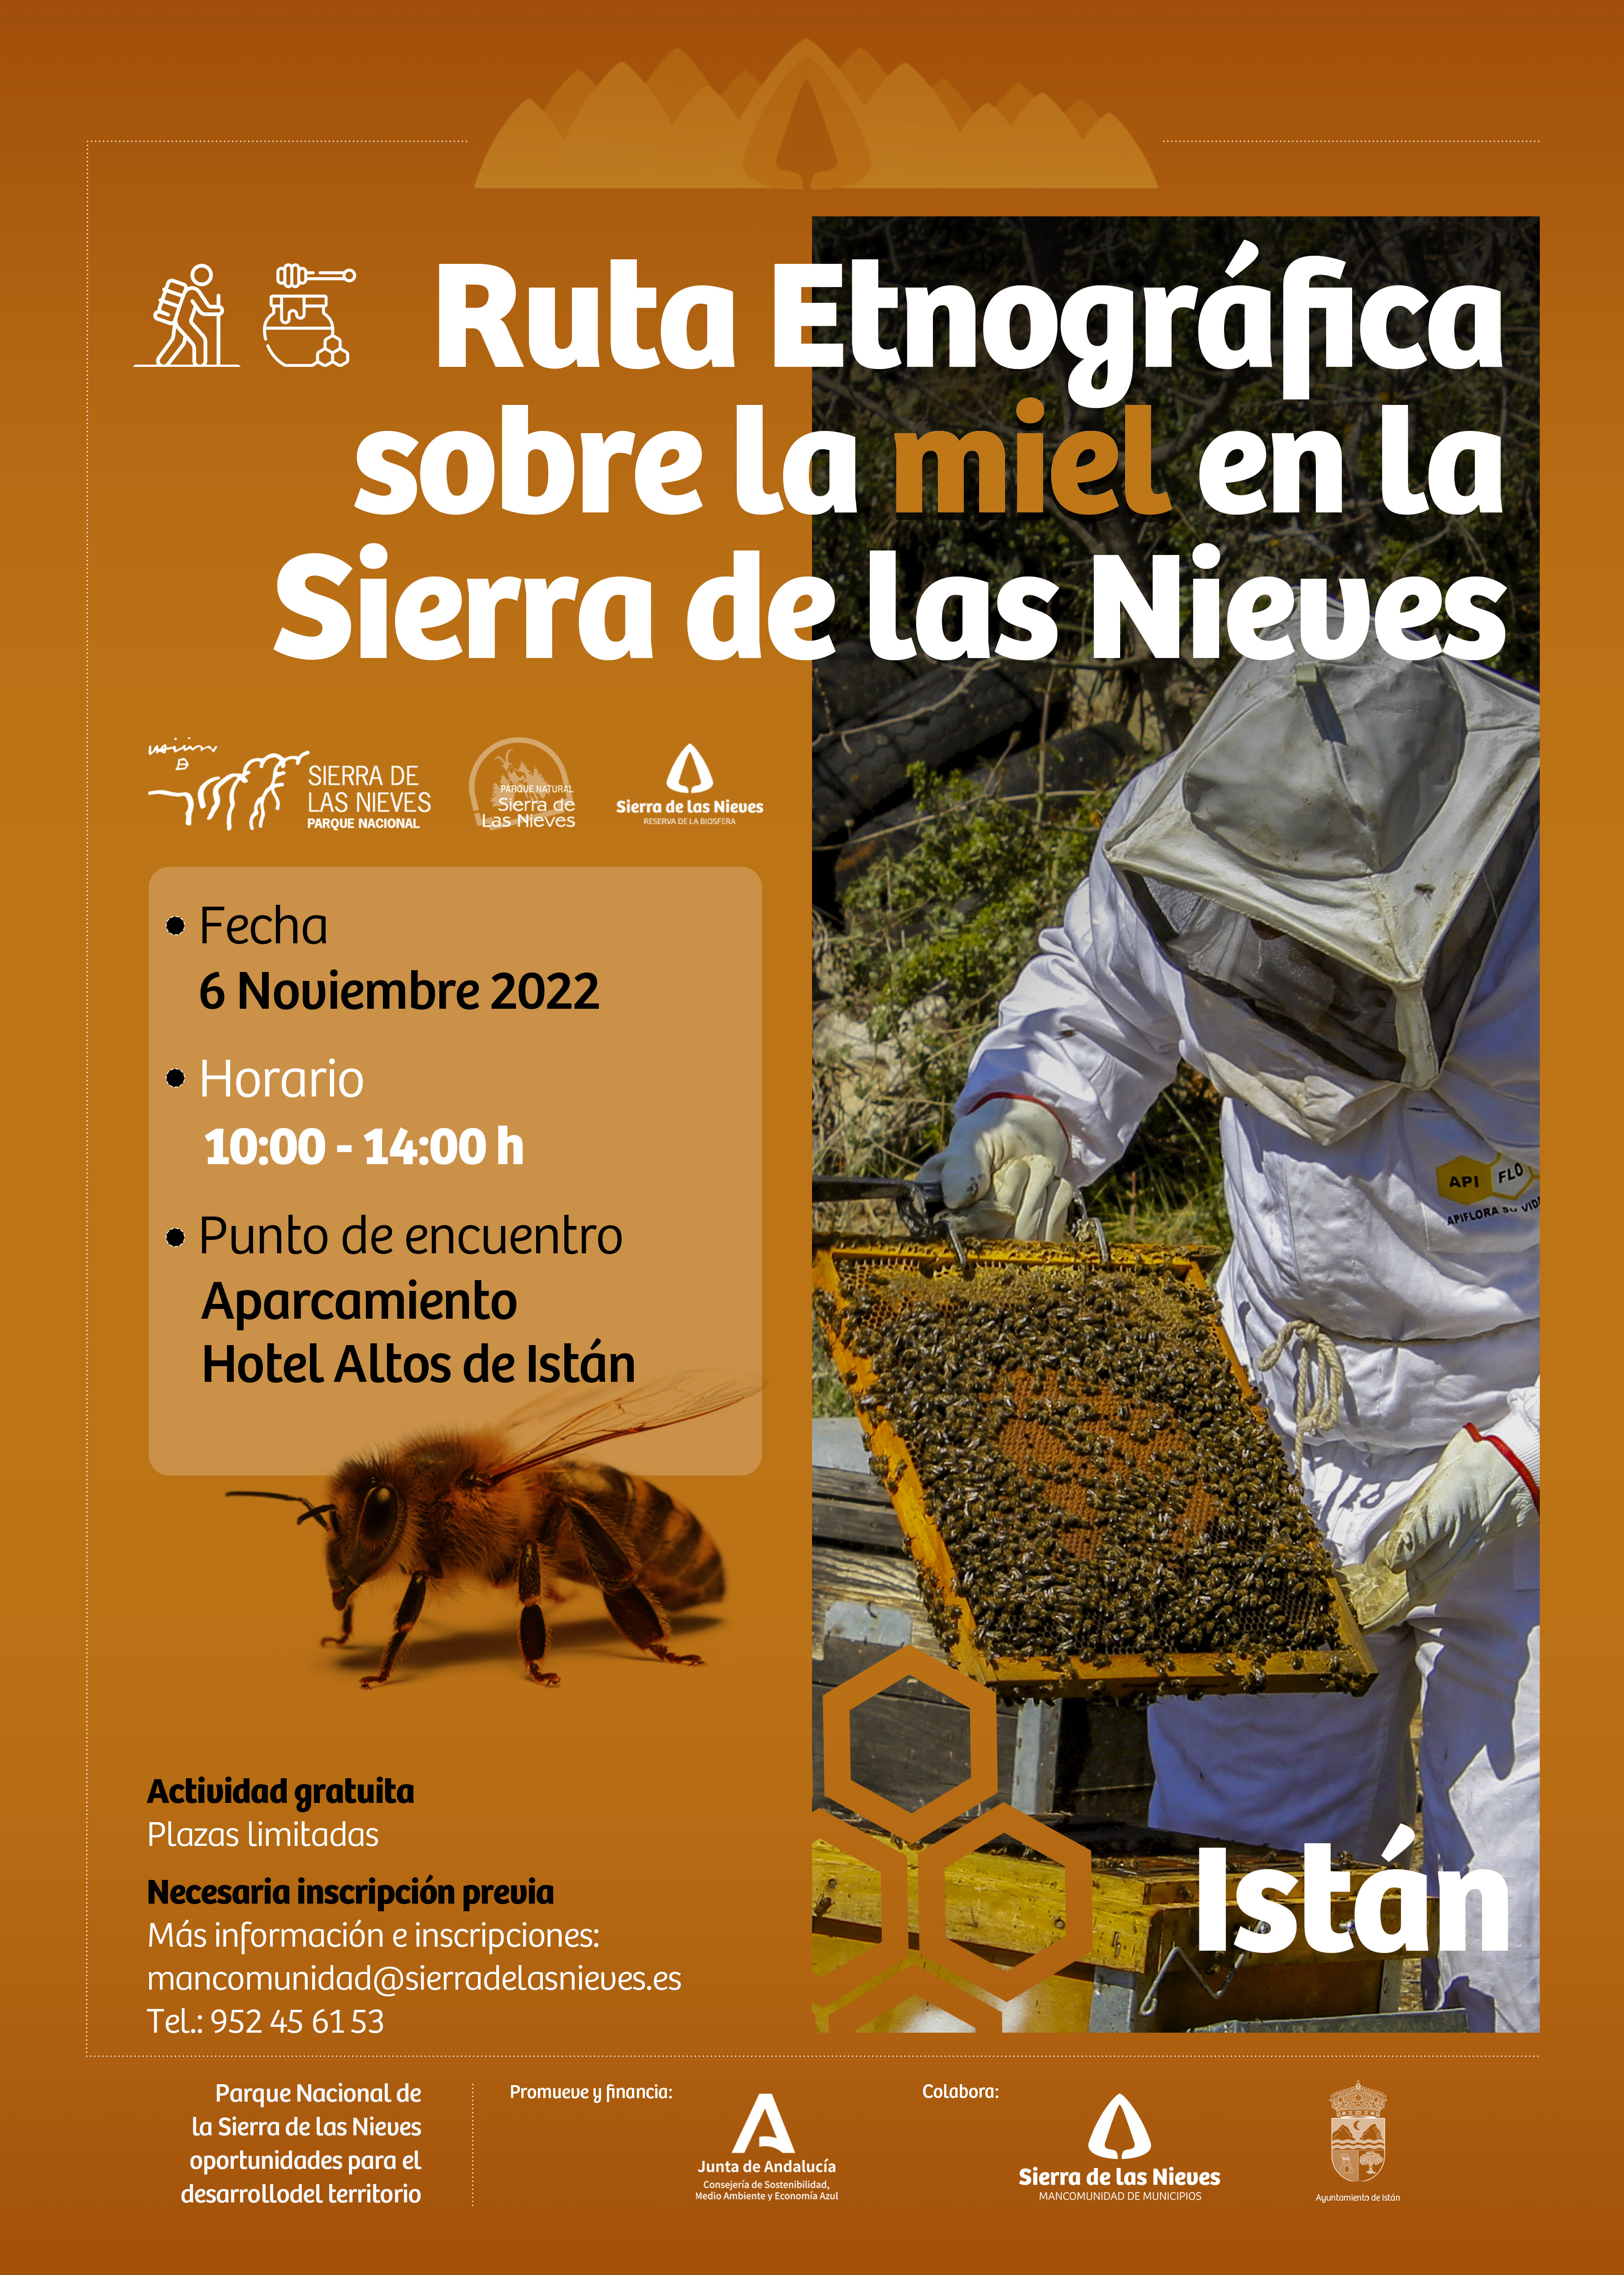 Ruta Etnográfica sobre la miel en la Sierra de las Nieves - Fecha 6 de Noviembre 2022 - Lugar de encuentro: Aparcamiento Hotel Altos de Istán.